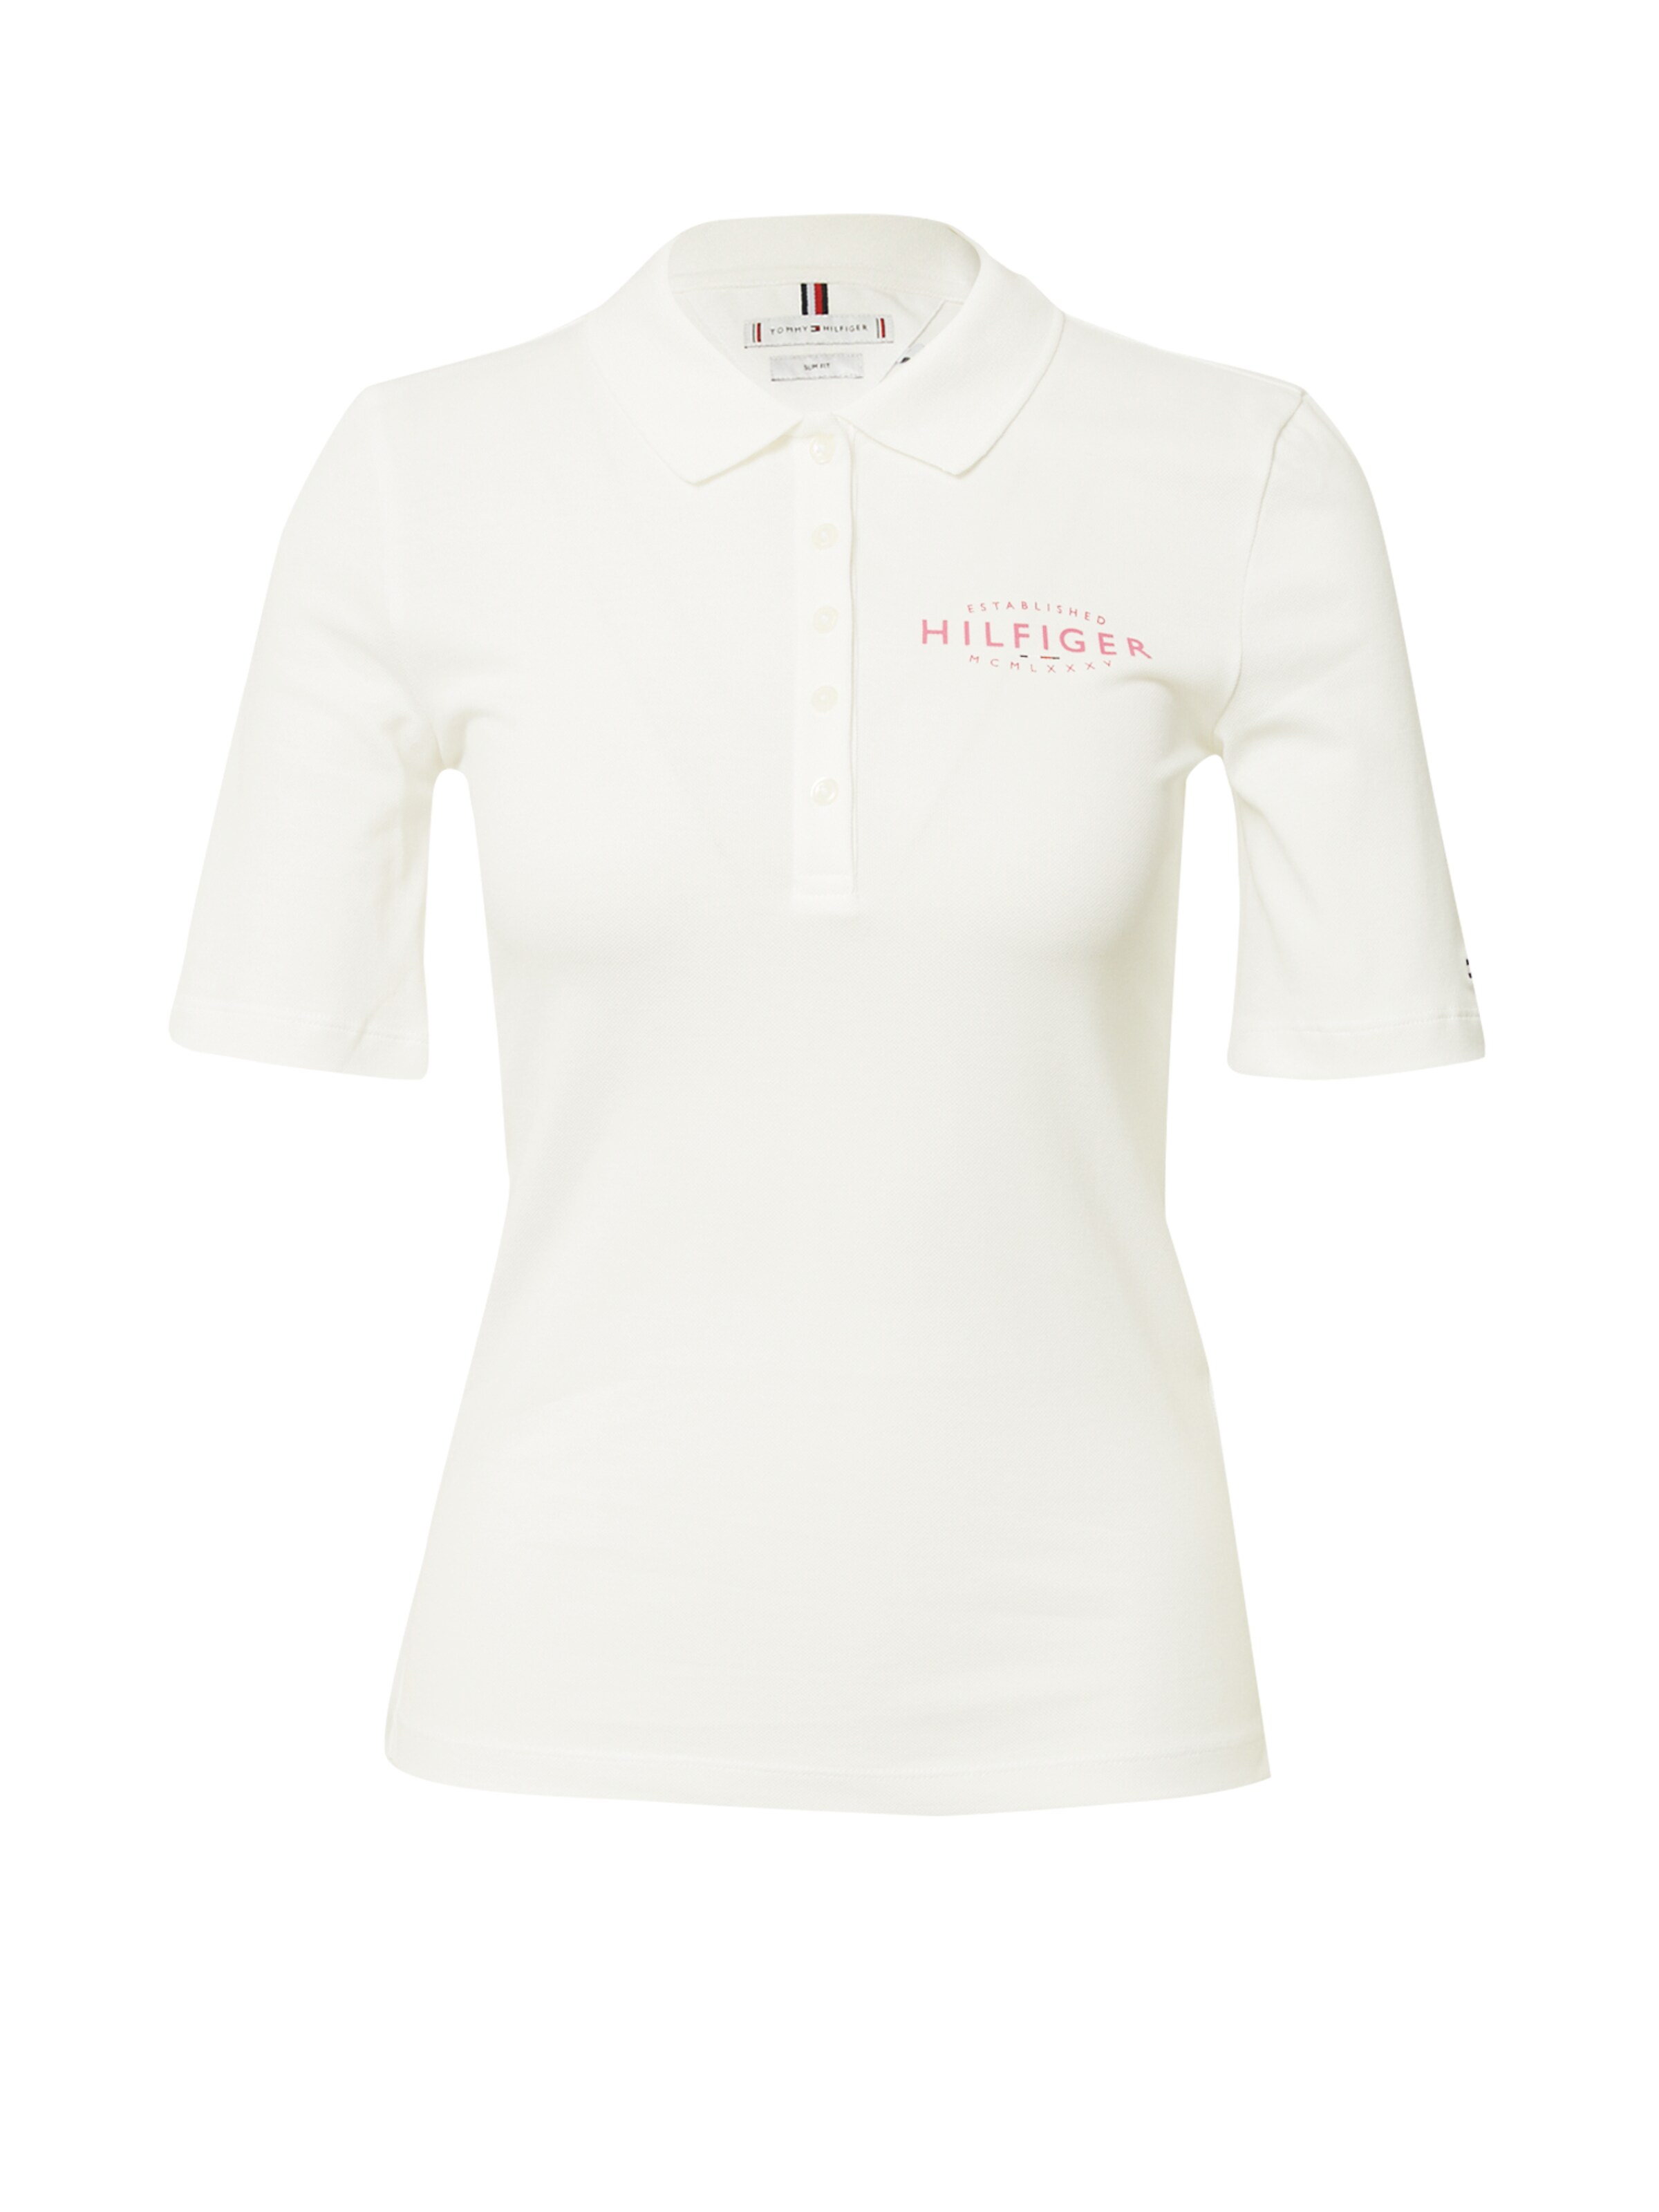 Damen Bekleidung Shirts & Tops Poloshirts INT S Tommy Hilfiger Damen Poloshirt Gr 